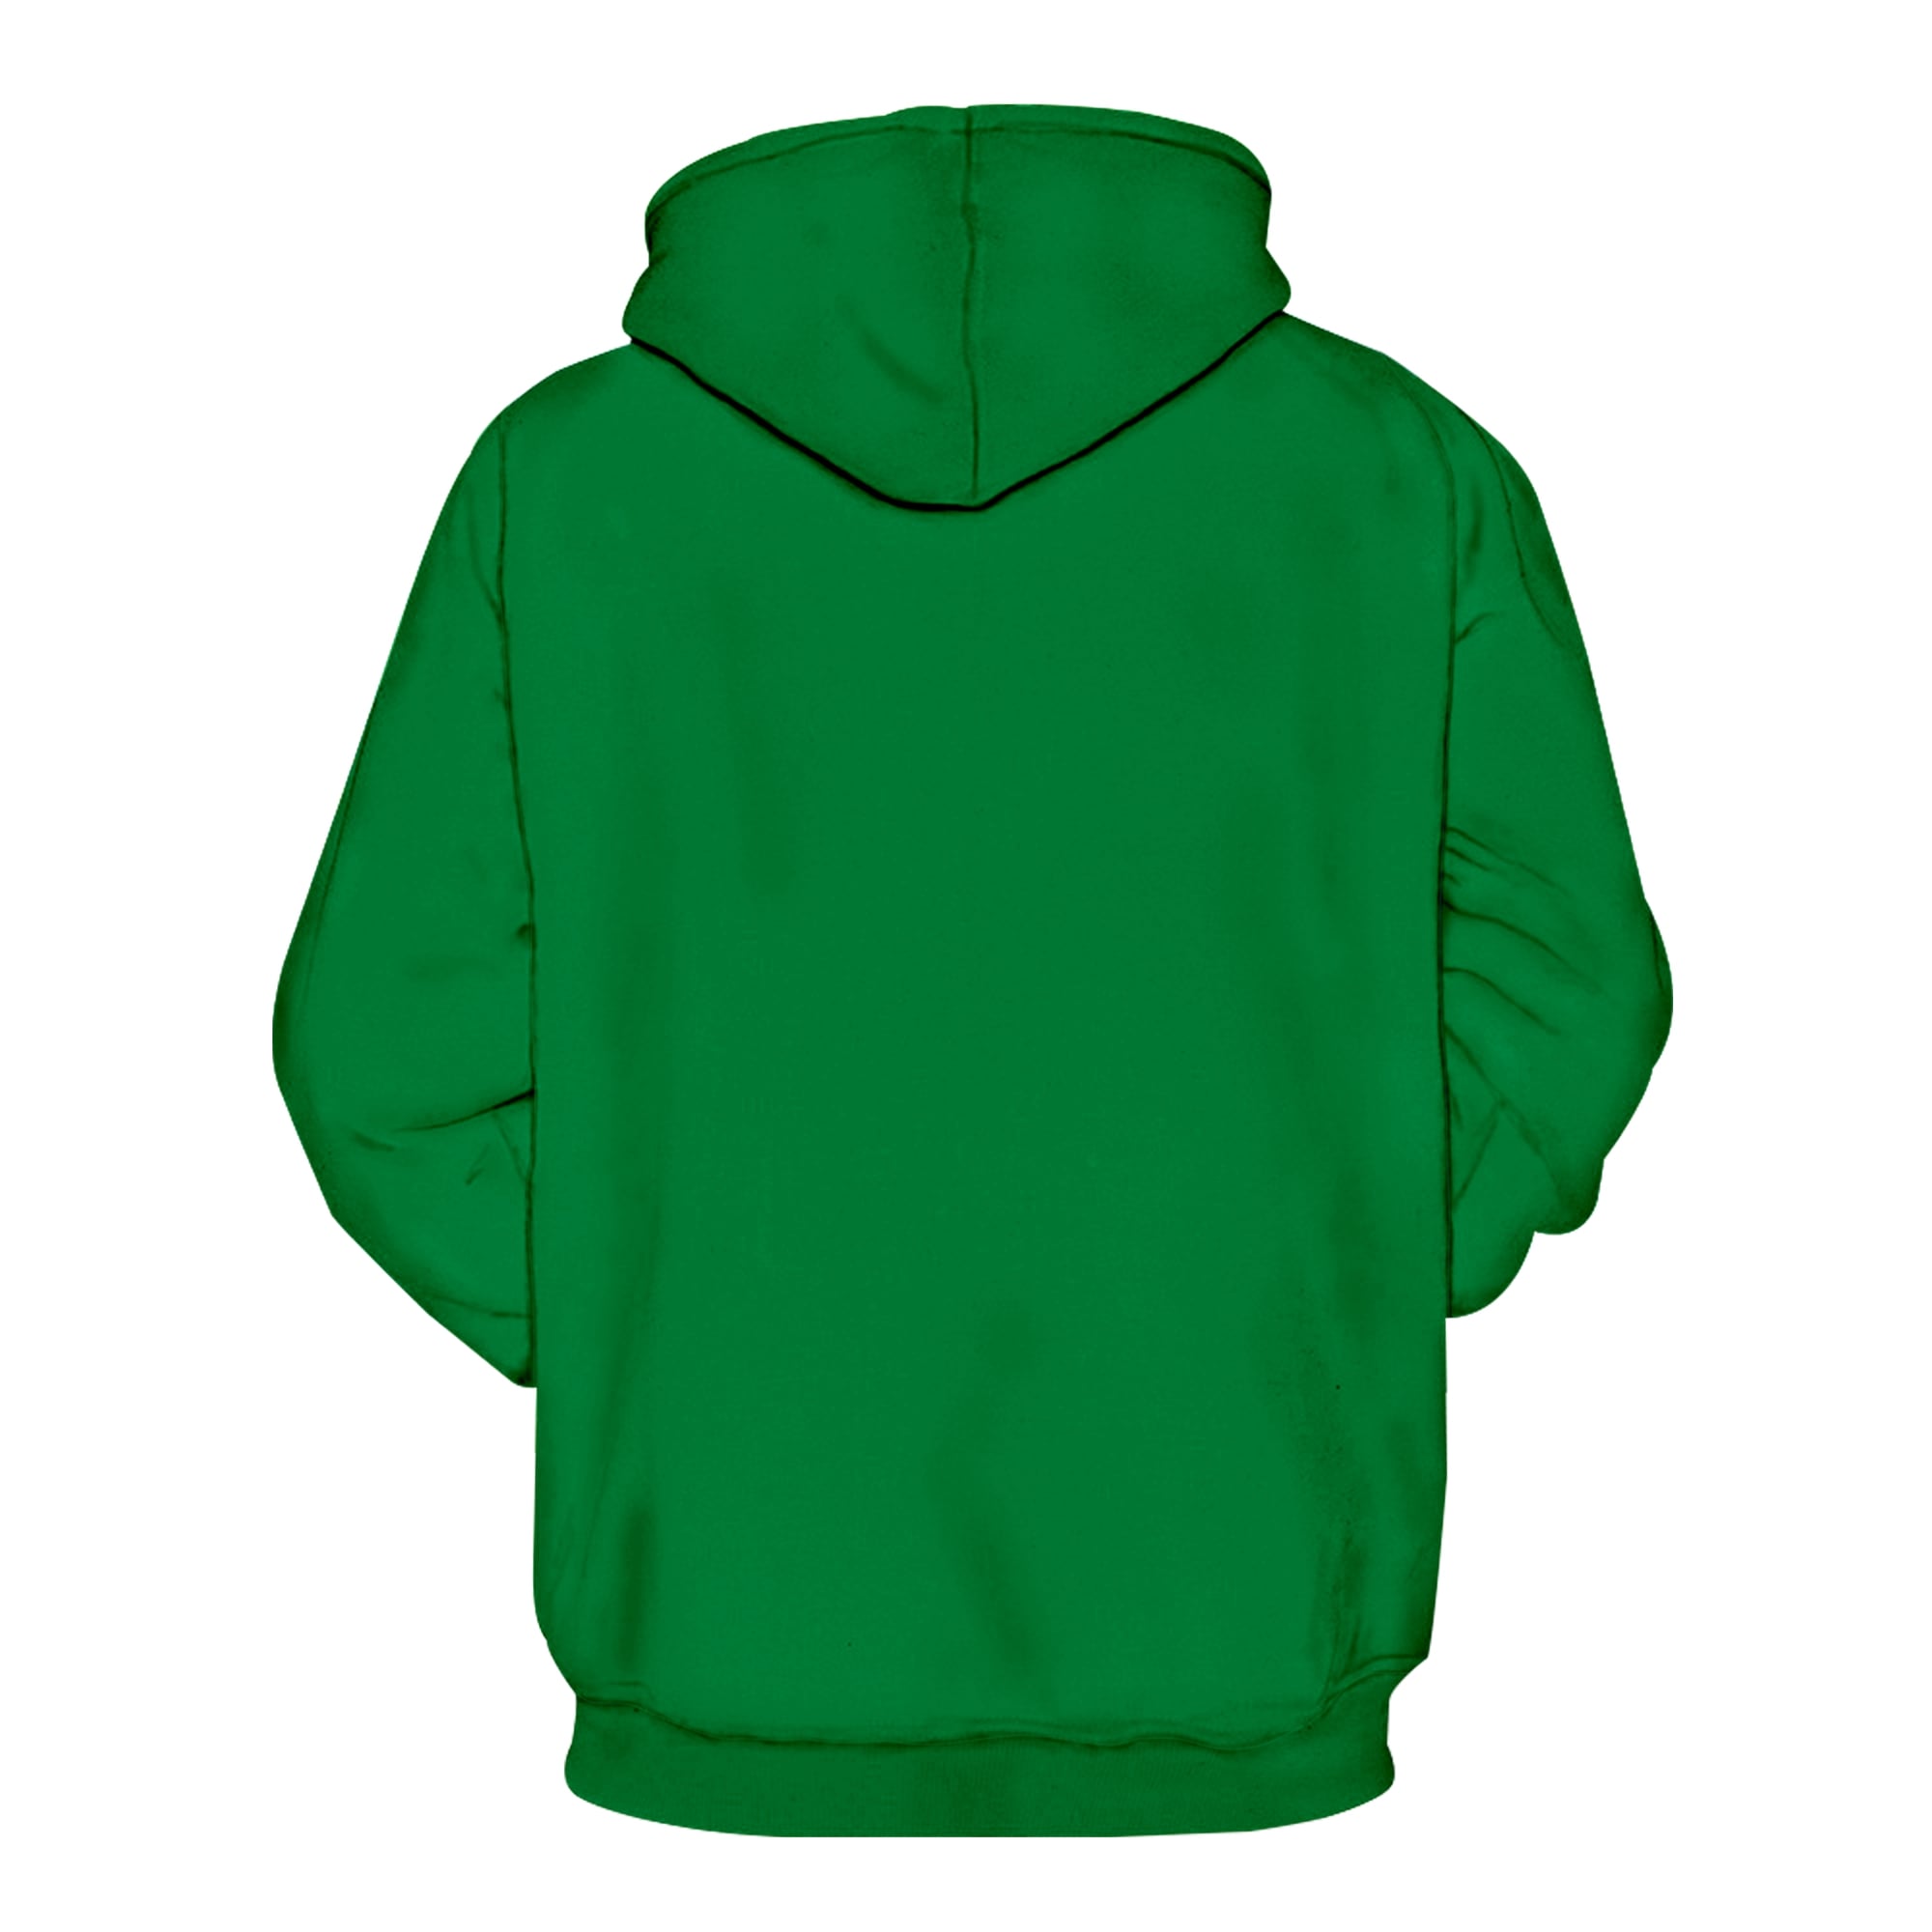 Irish saint patrick's day groot full printing hoodie - back